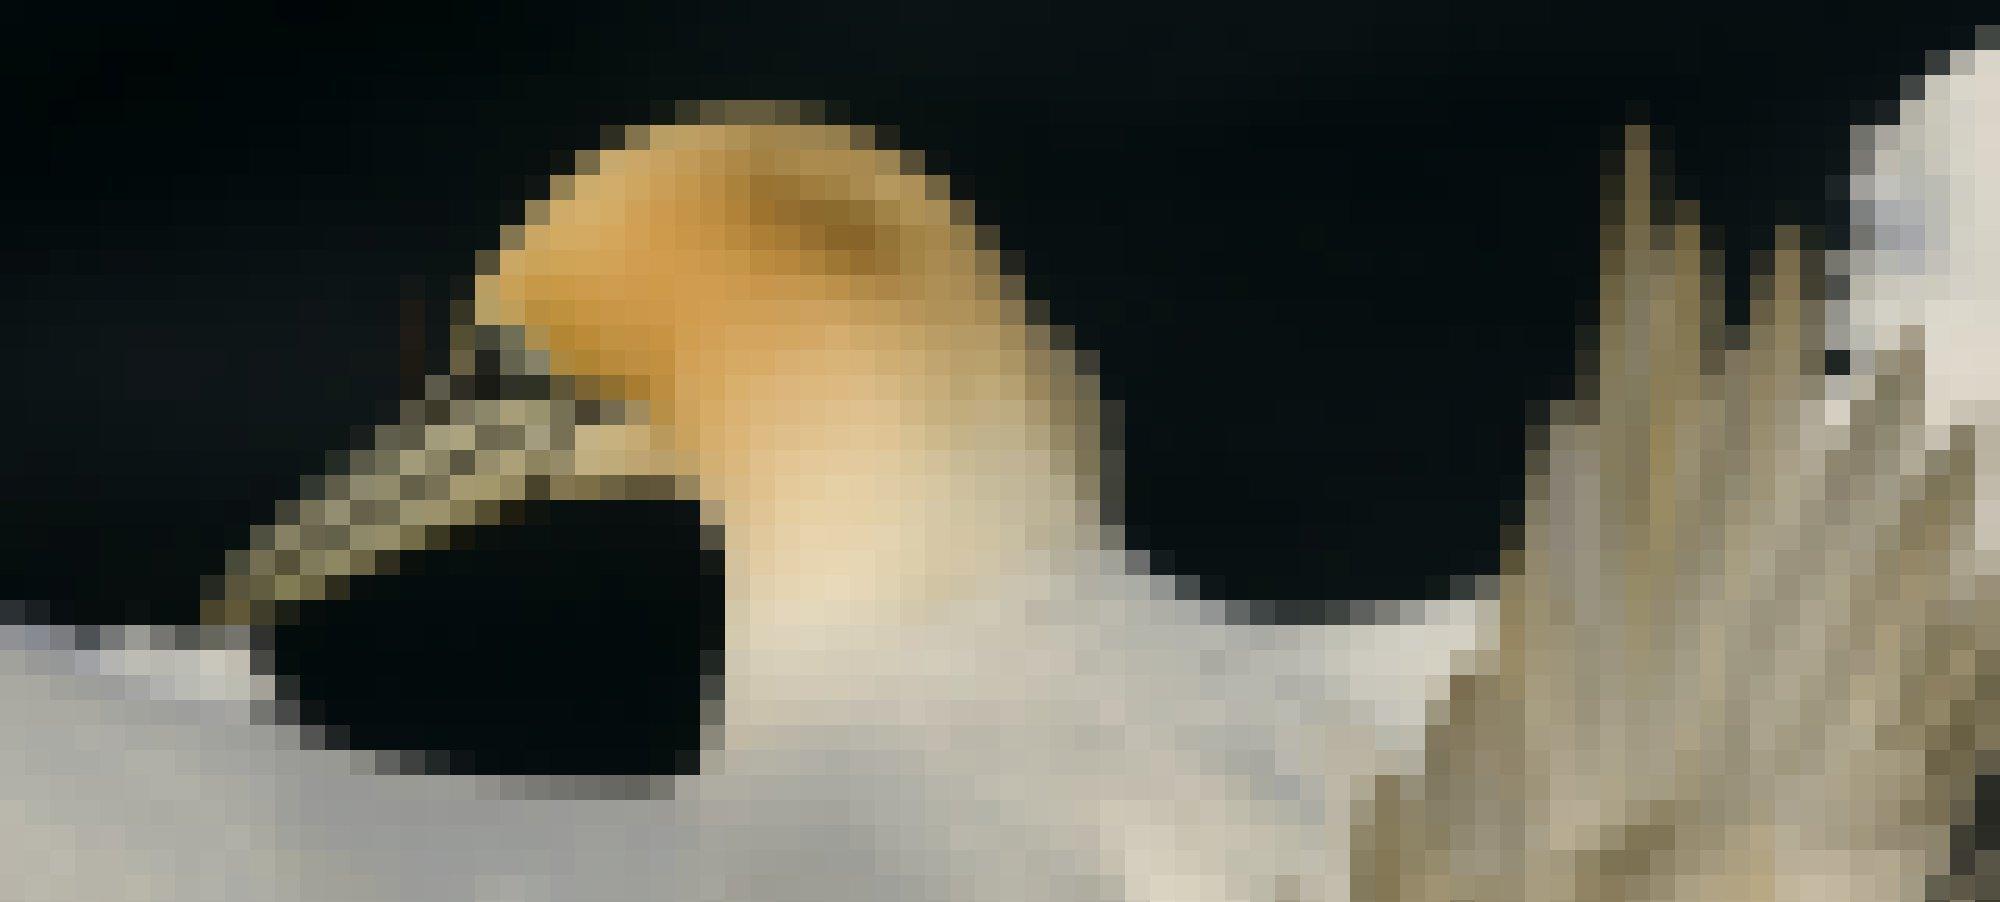 Ein Porträtfoto eines Basstölpels mit strahlend weißem Gefieder und cremefarbener Nackenfärbung